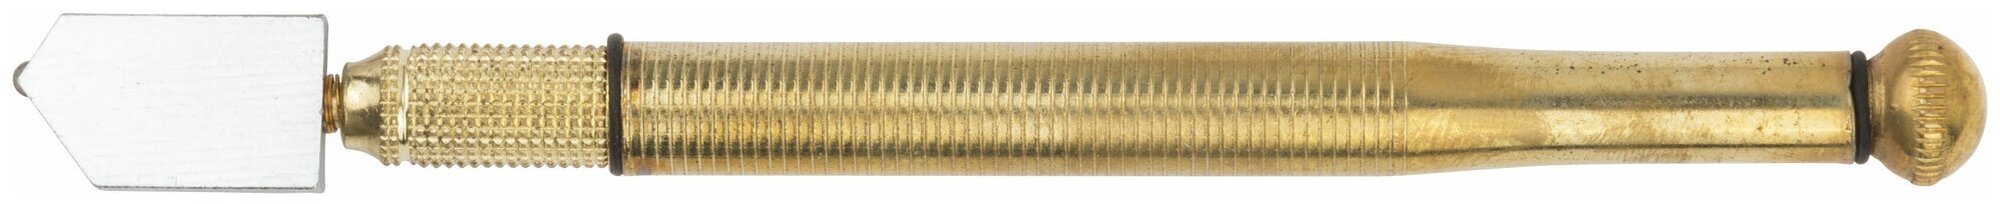 Стеклорез роликовый масляный металлический корпус FIT 16922